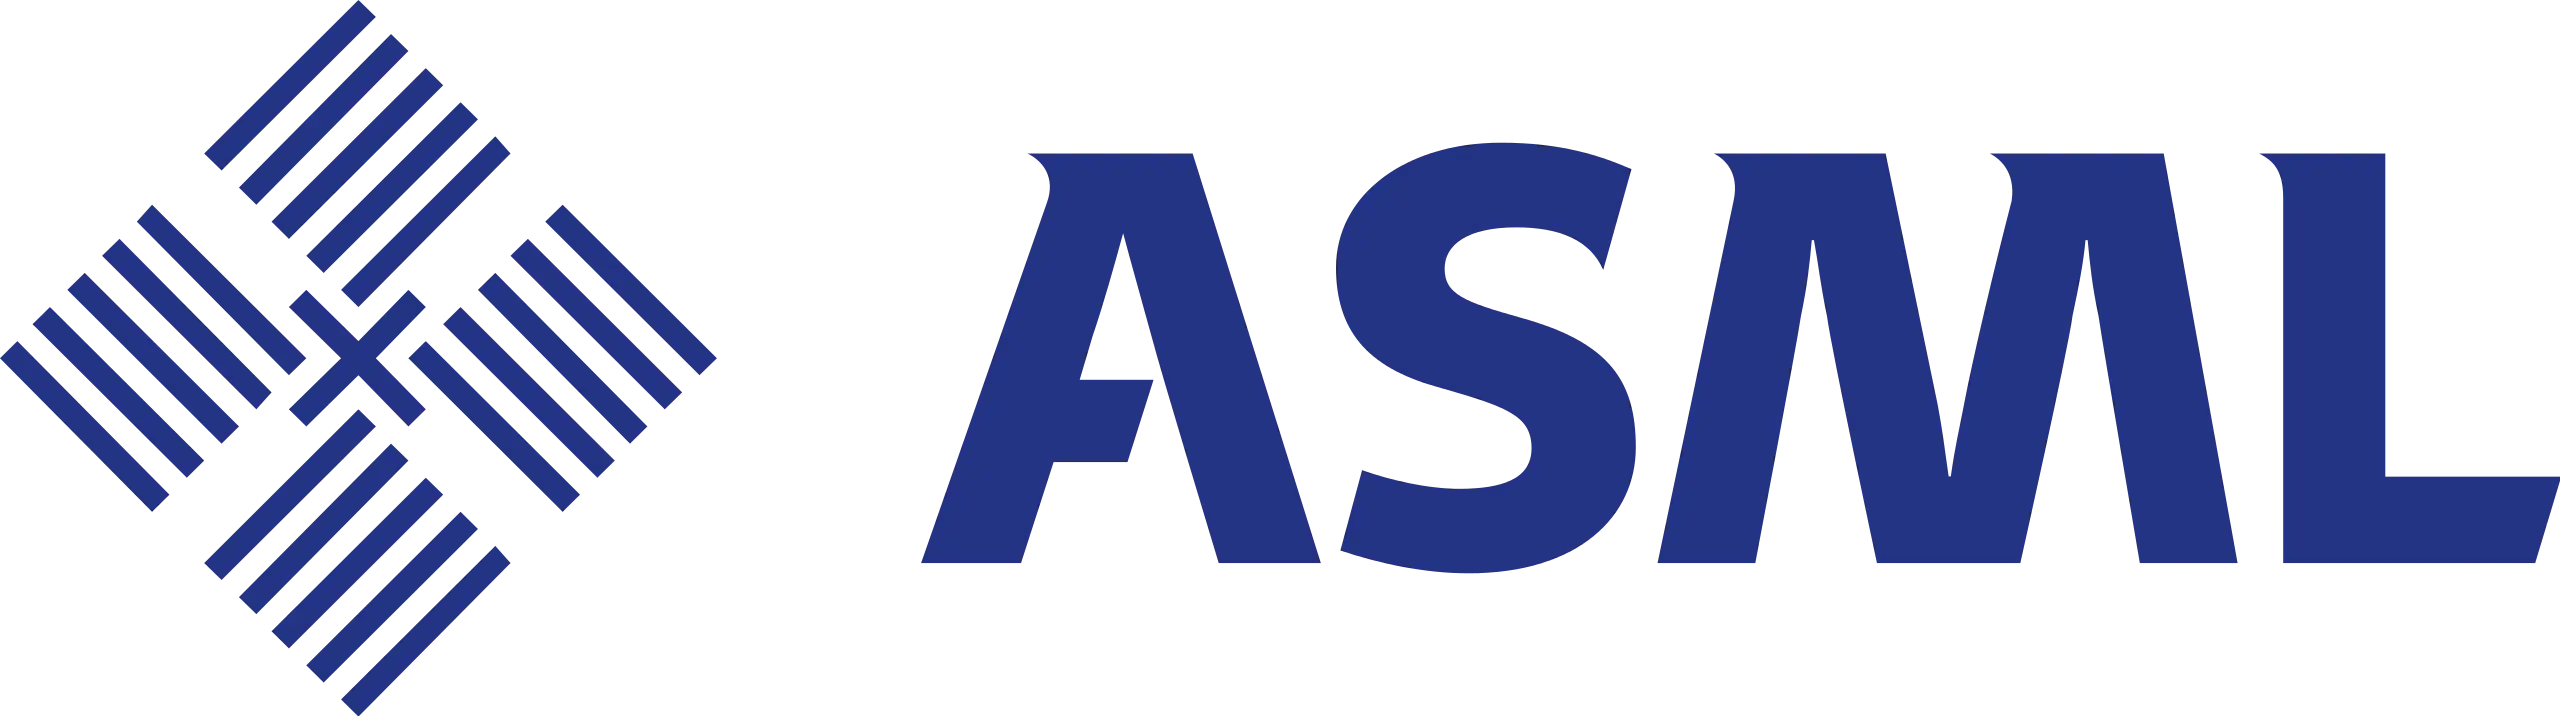 logo-艾司摩爾